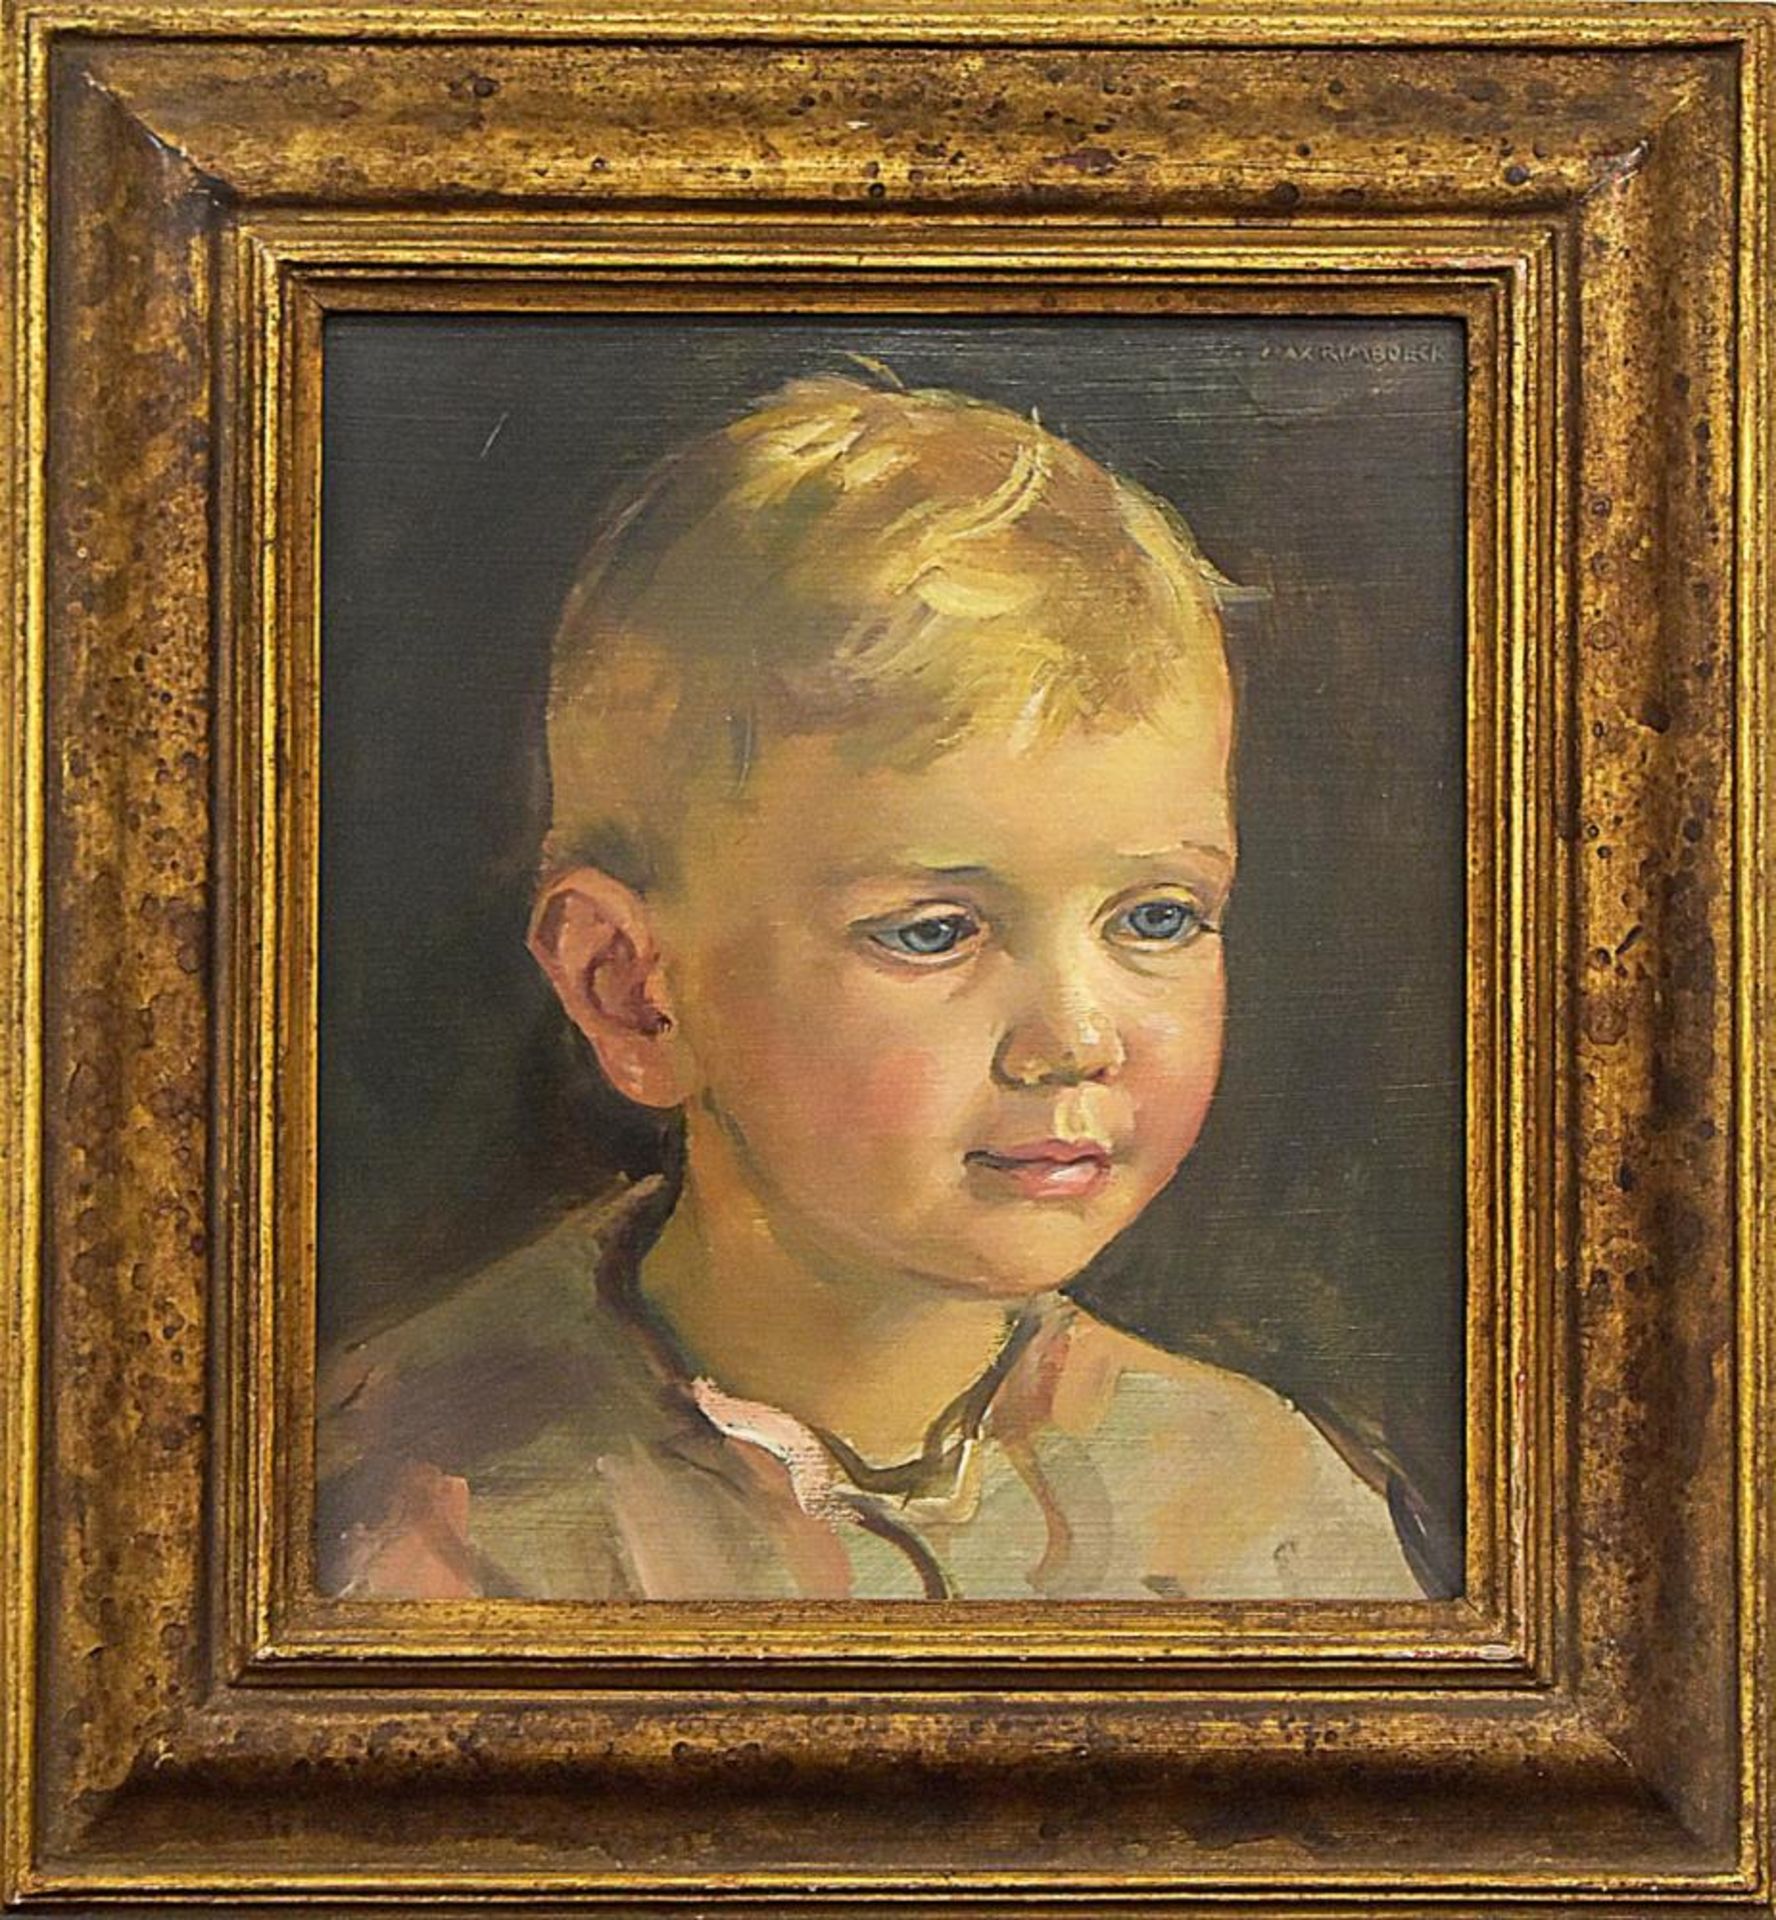 RIMBOECK, MAX. Kinderporträt. Öl/Holz.